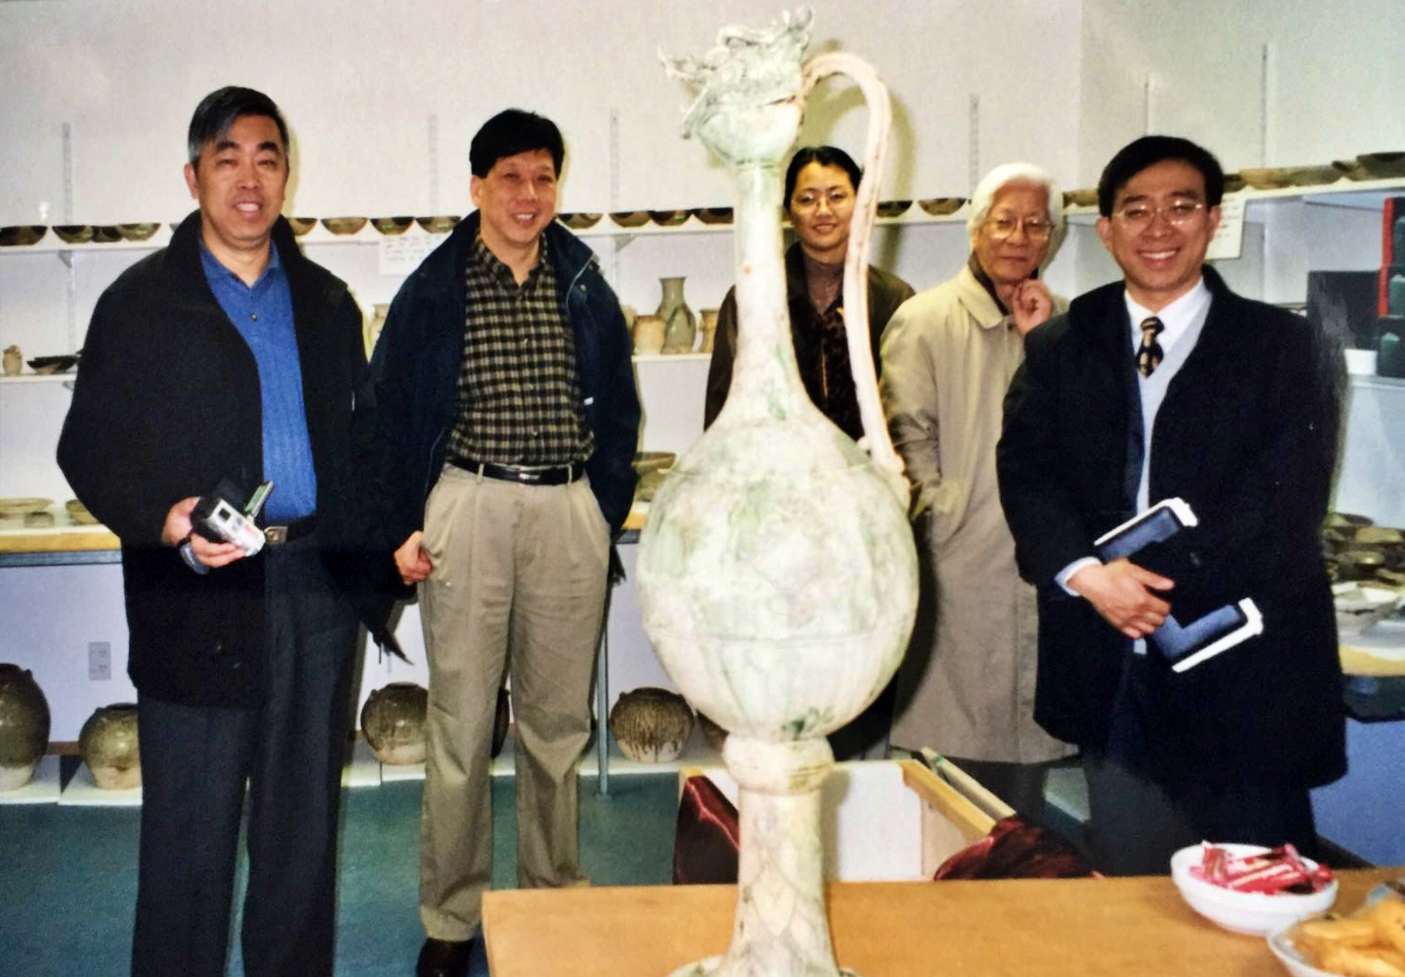 2002年4月，上海博物馆代表团一行5人赴新西兰“黑石号”文物整理现场考察。（从左至右分别为：许勇翔、陈克伦、周燕群、汪庆正、陈燮君）